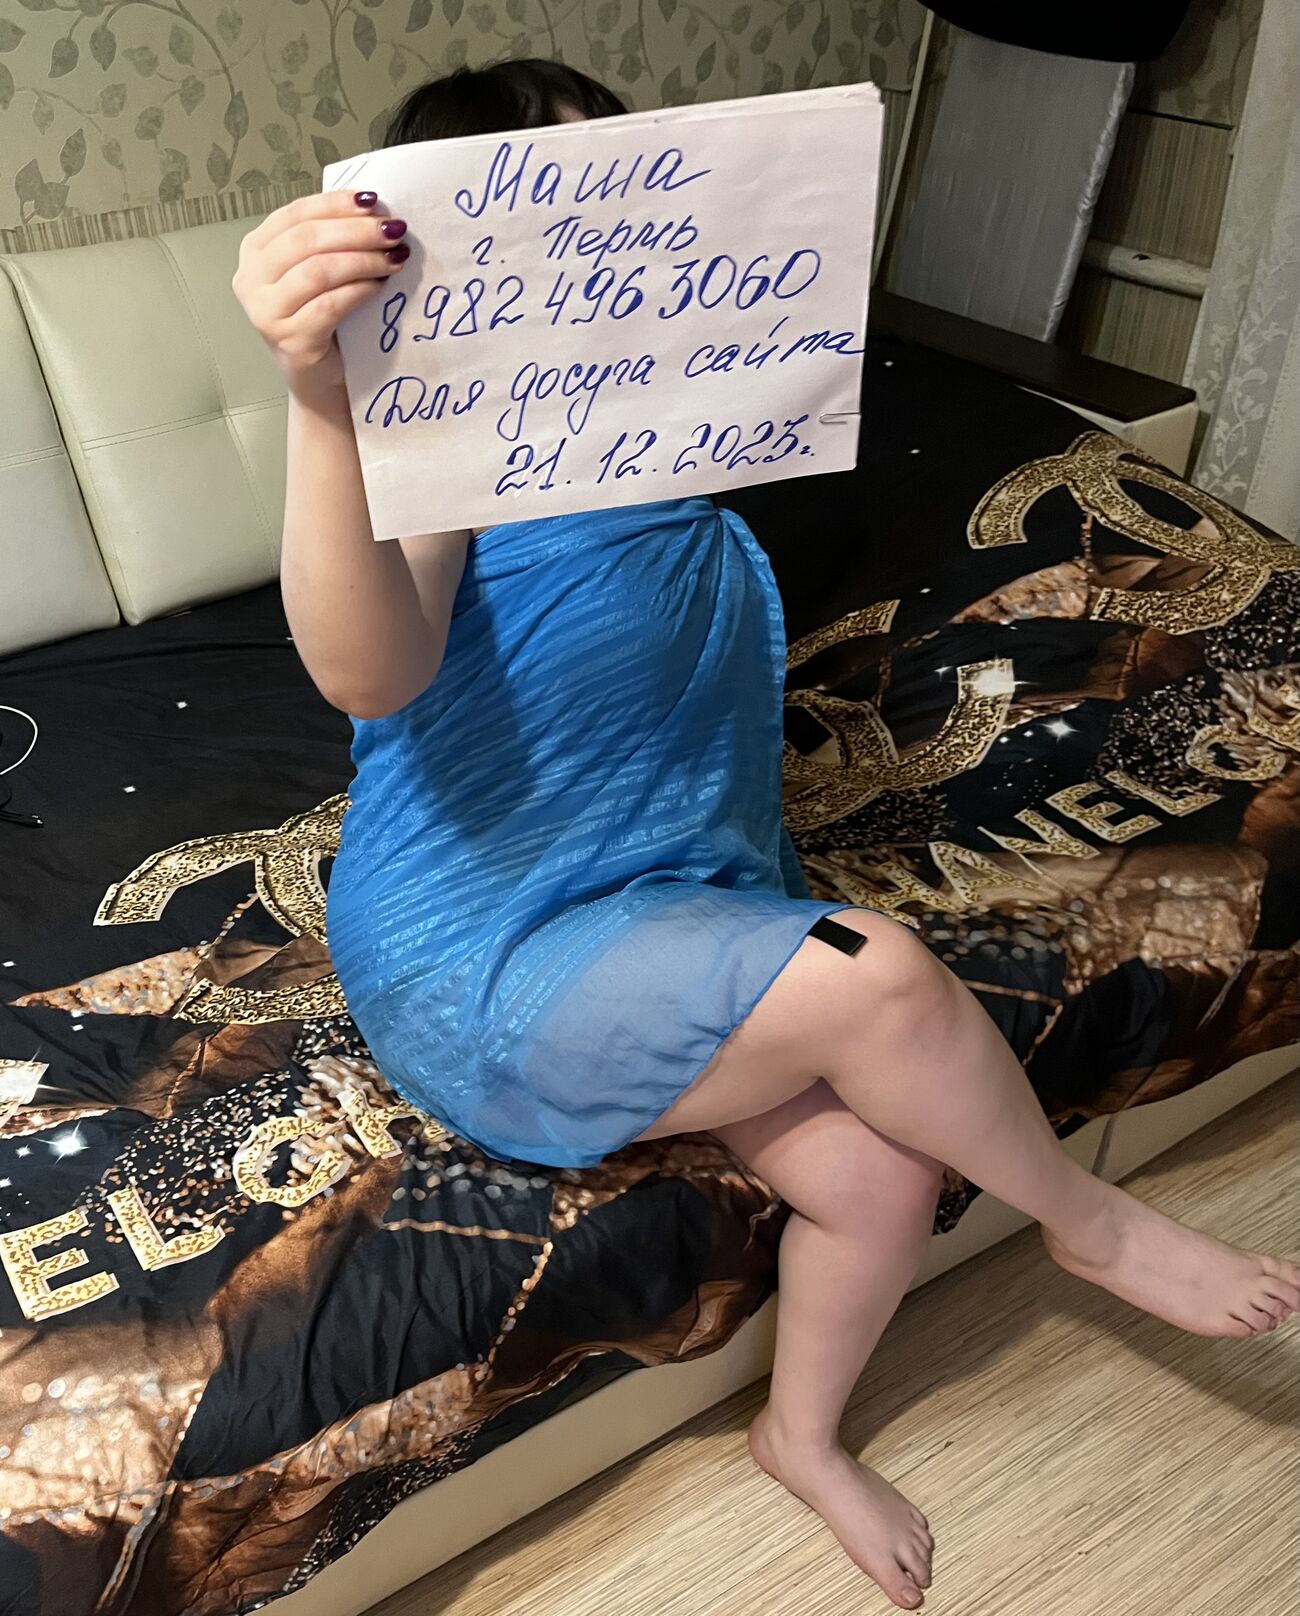 Массажистка Мария 22 лет сделает профессионально массаж не профи и примет у себя в Свердловский